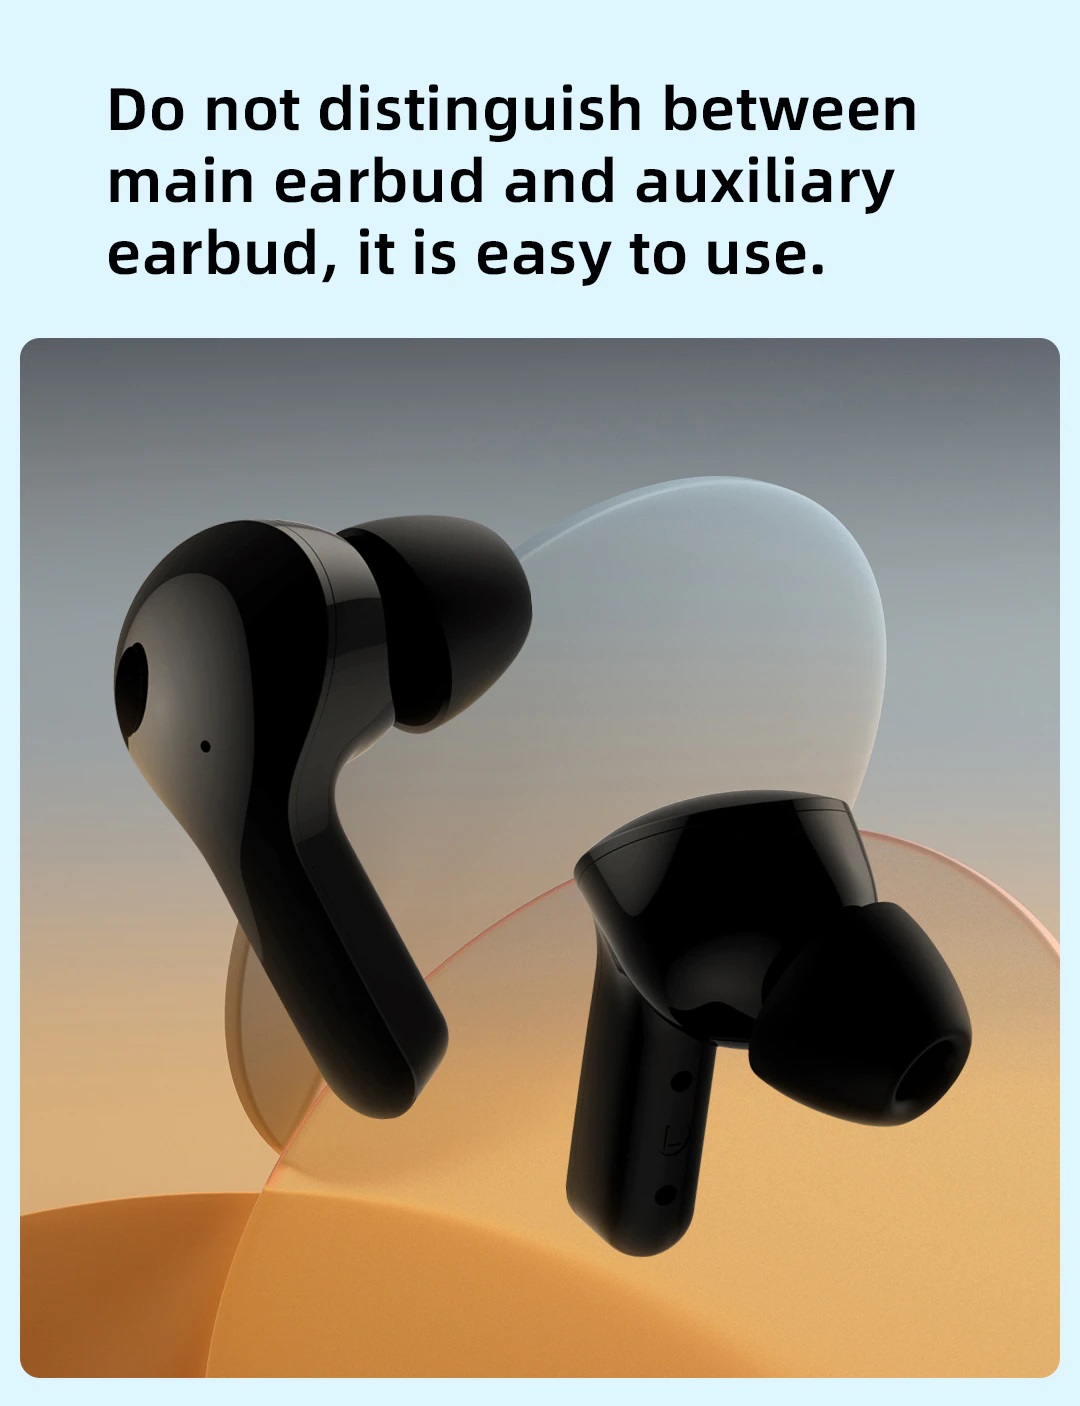 هندزفری بلوتوث میبرو مدل Mibro Earbuds 3